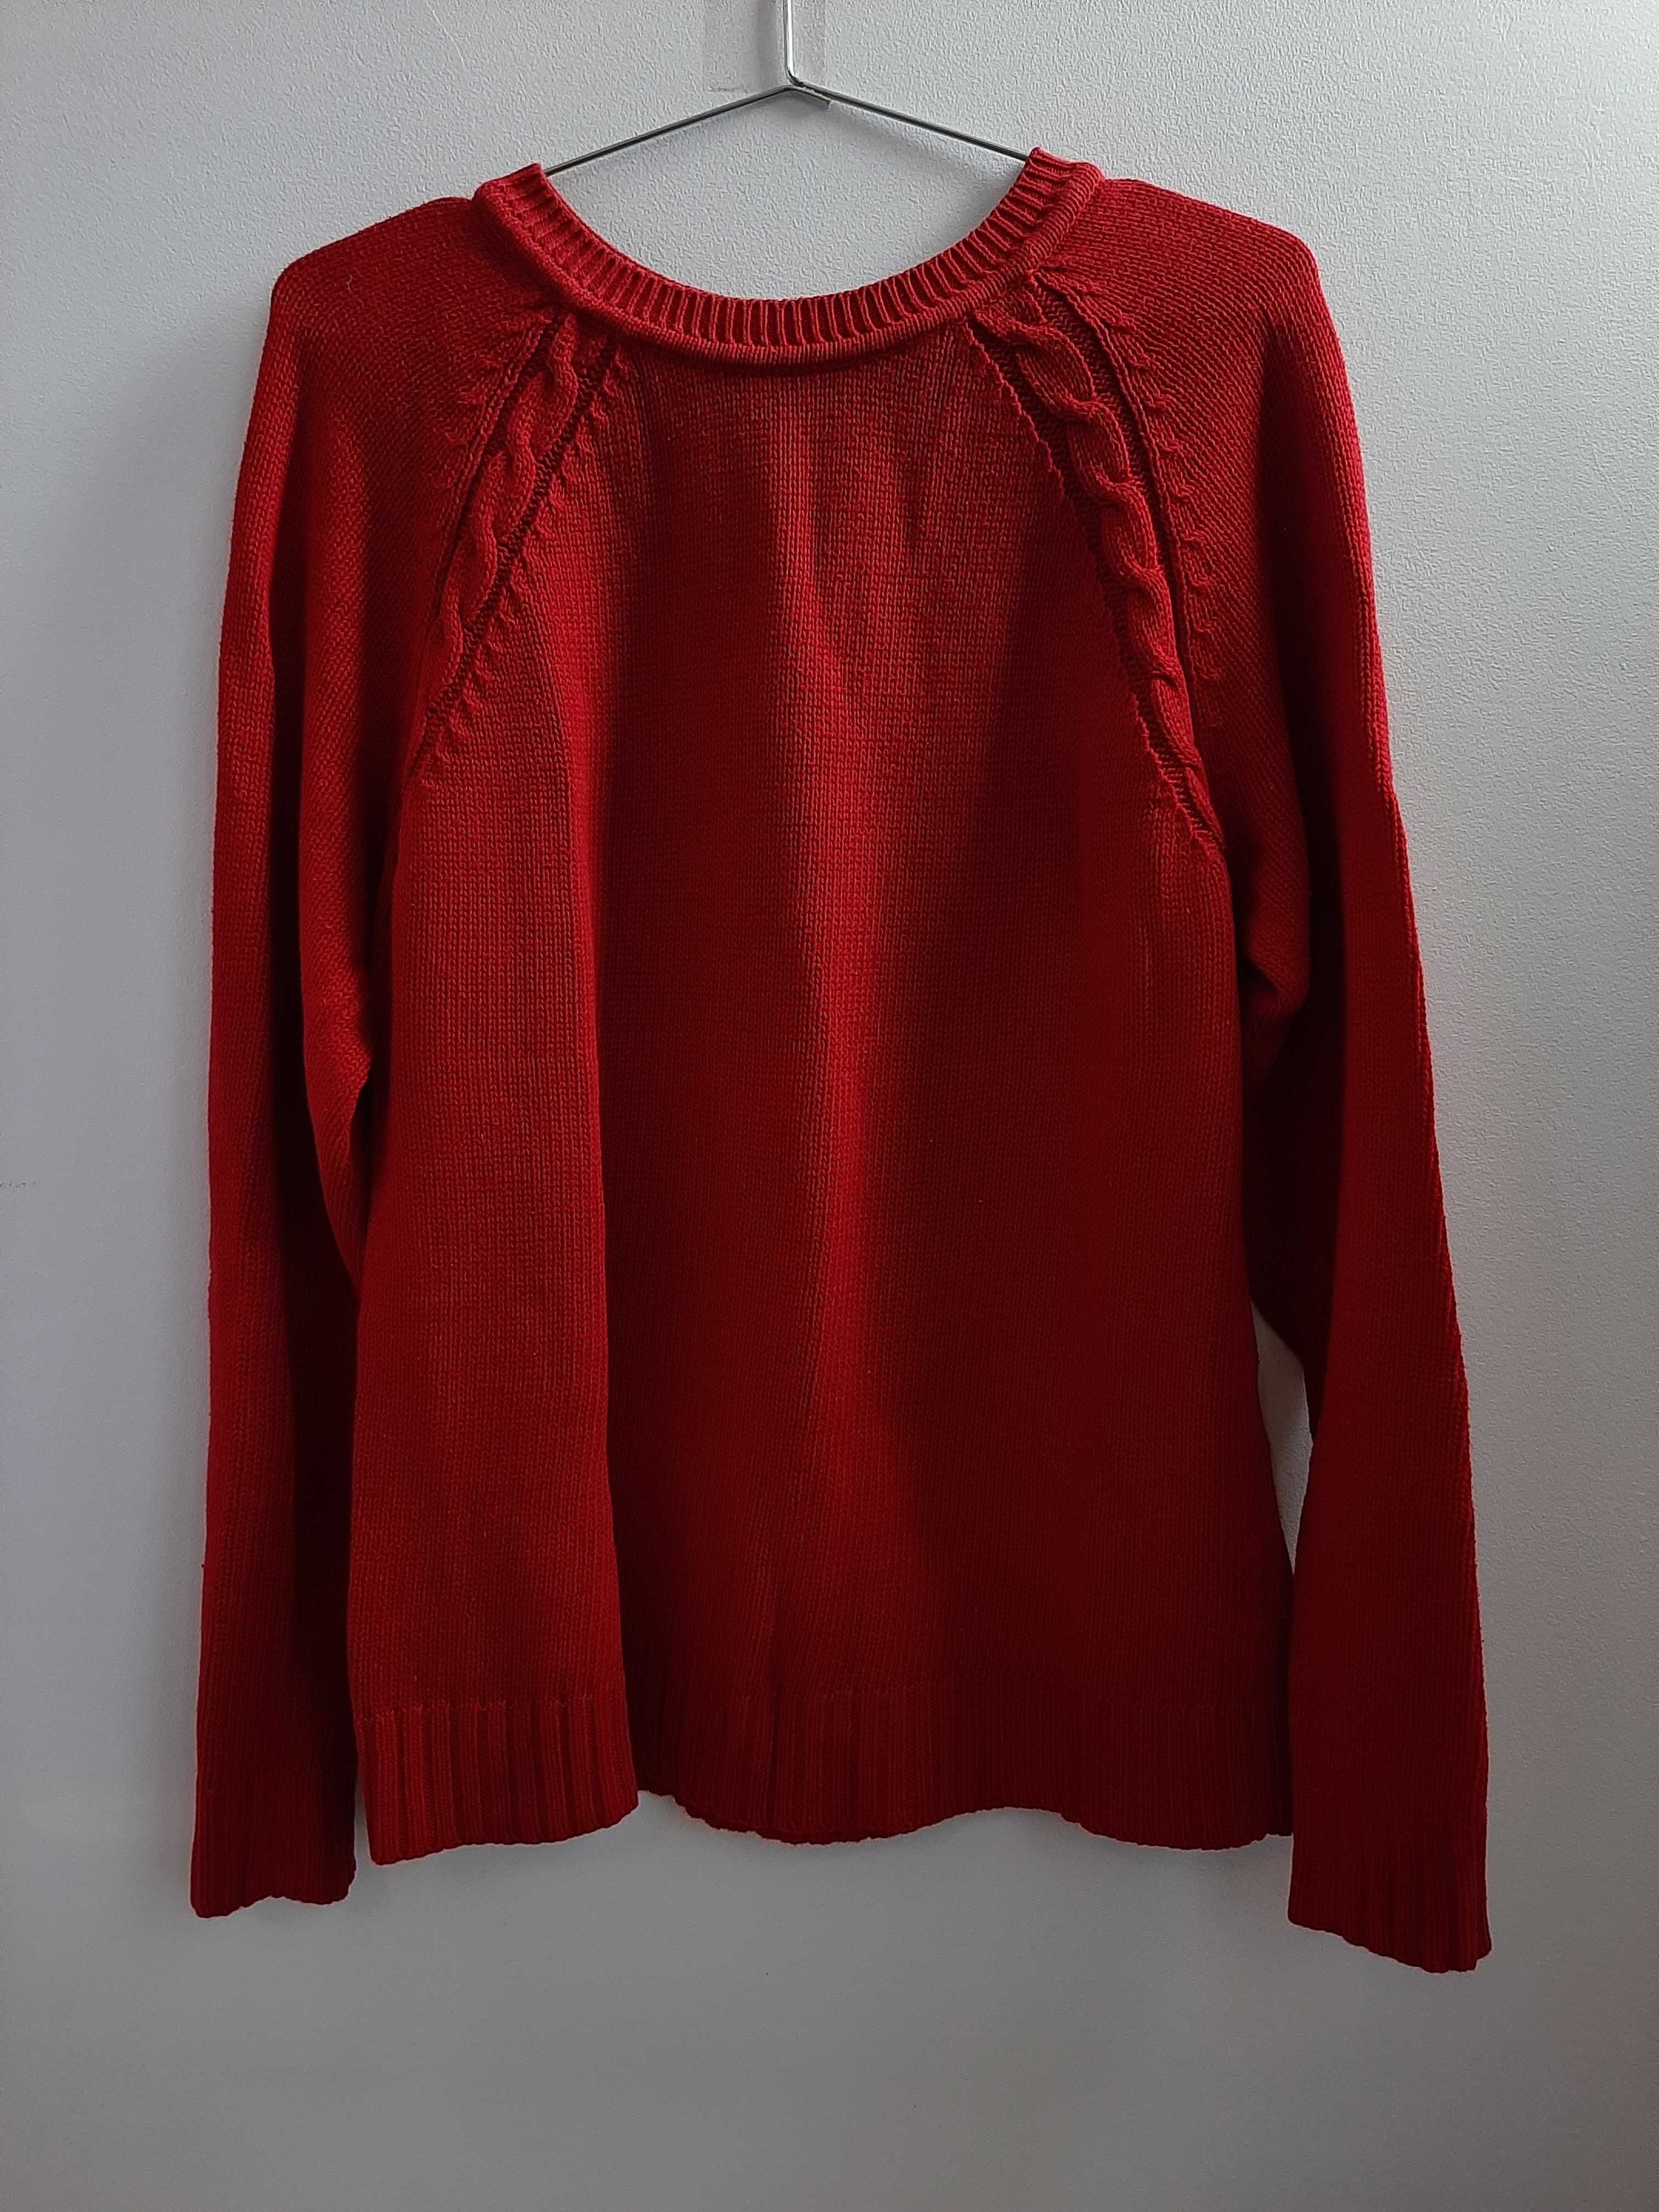 Жіночий в'язаний светр, червоний светр, зимовий светр